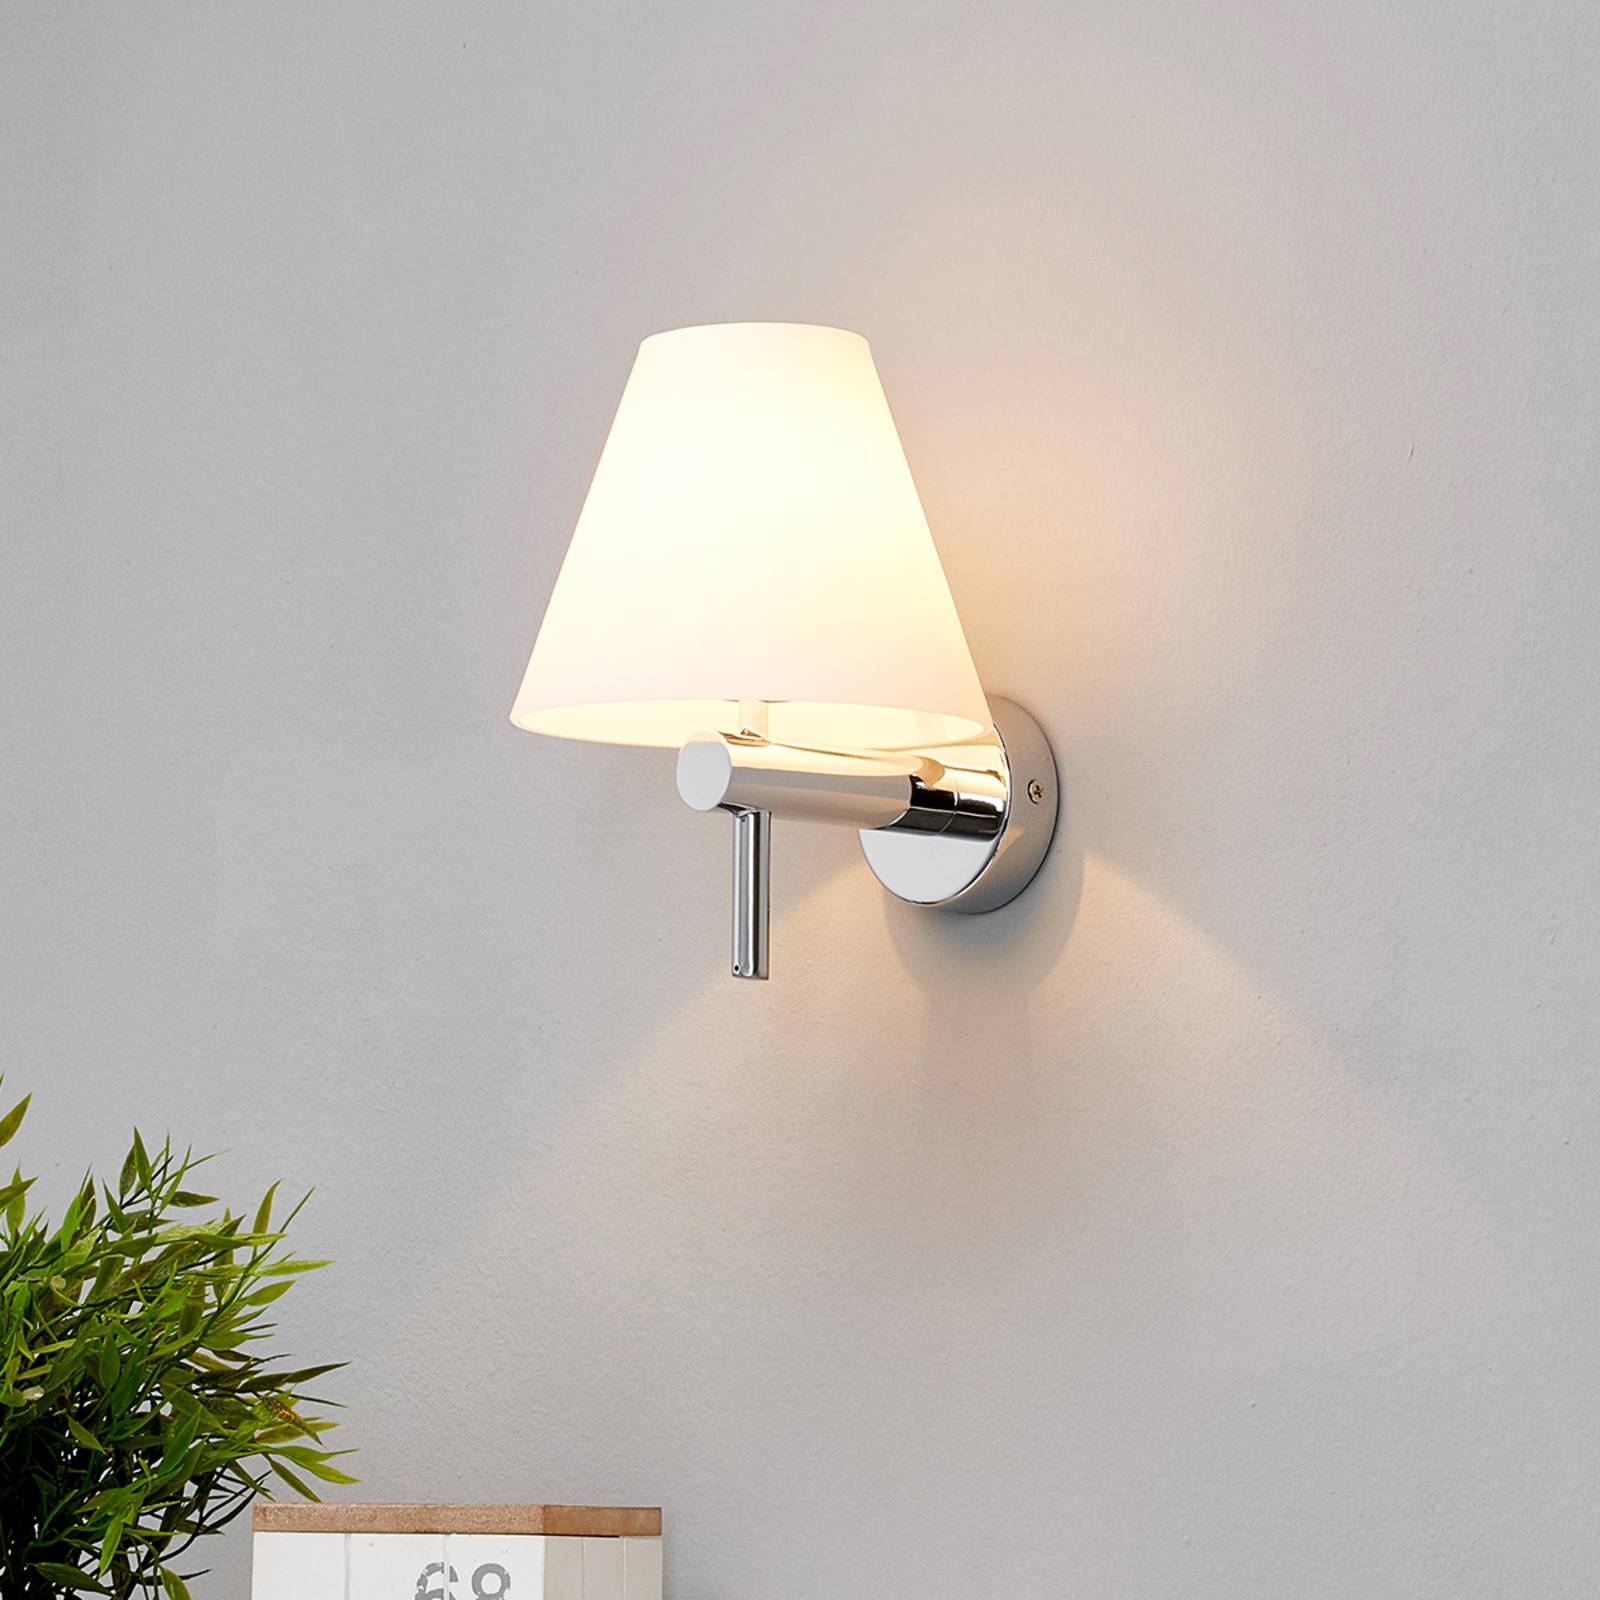 Elegant badrumslampa Violetta för väggmontering